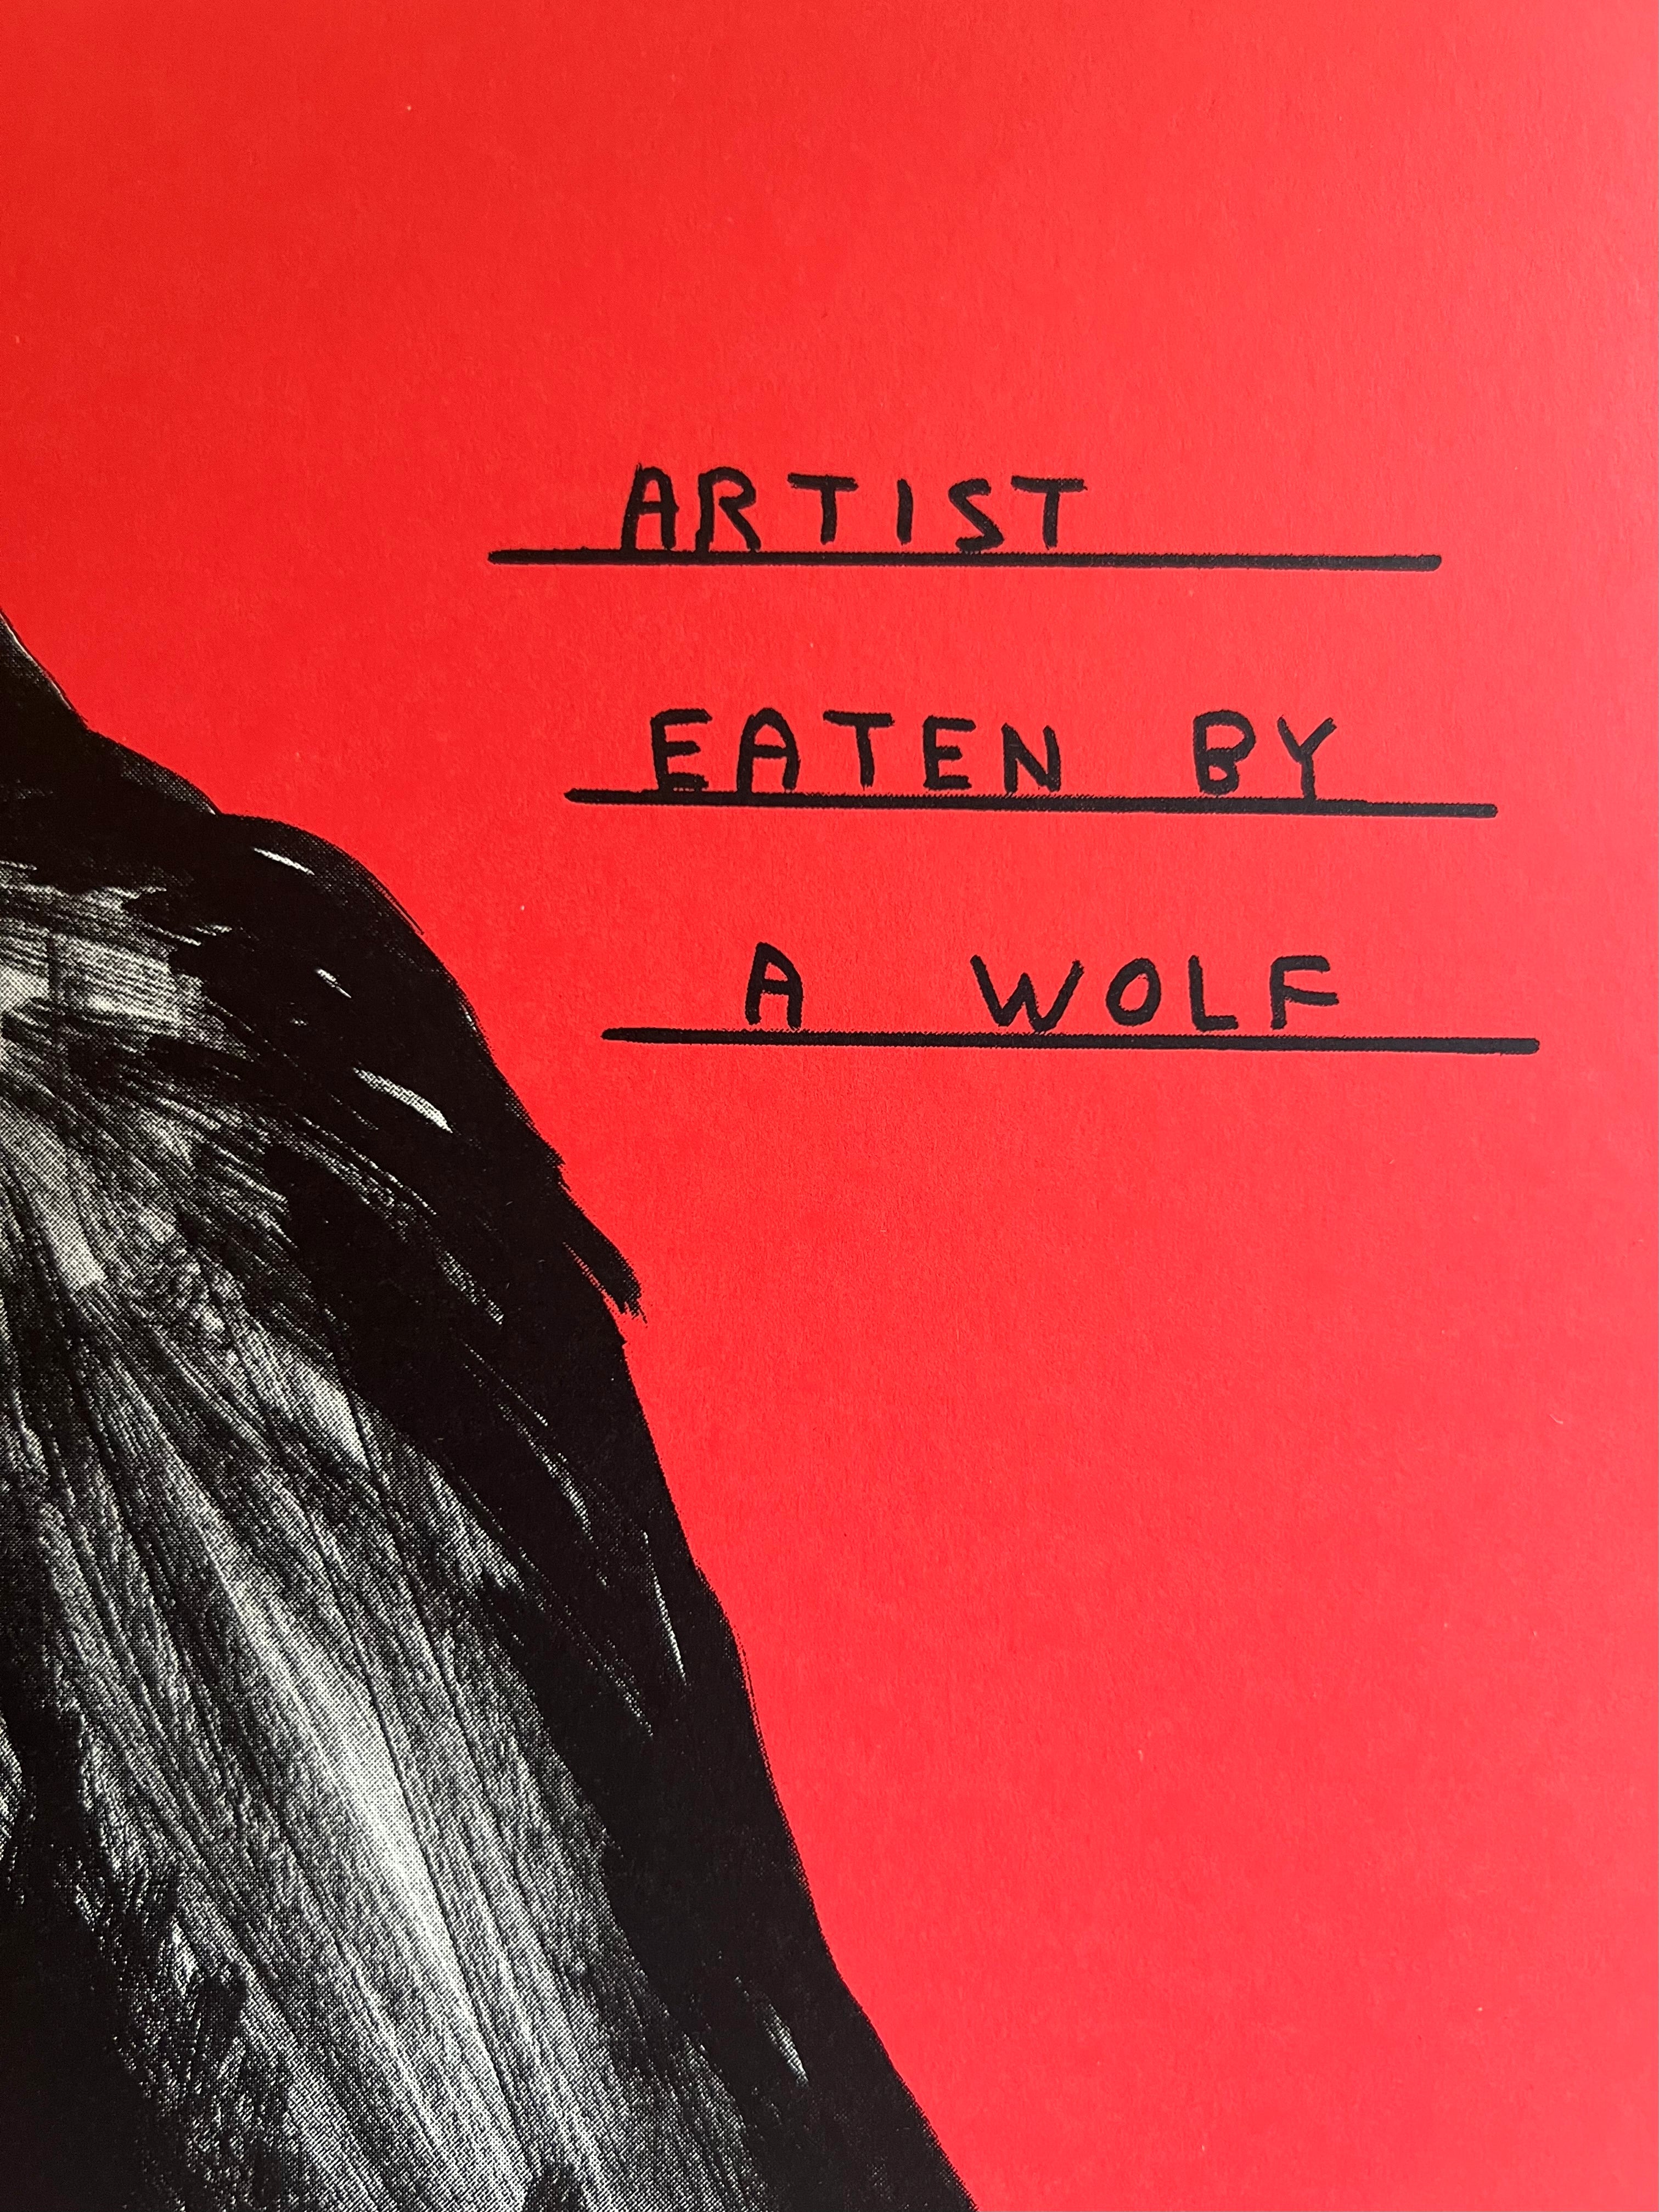 Artist eaten by a wolf no. 161 / 350 - David Shrigley